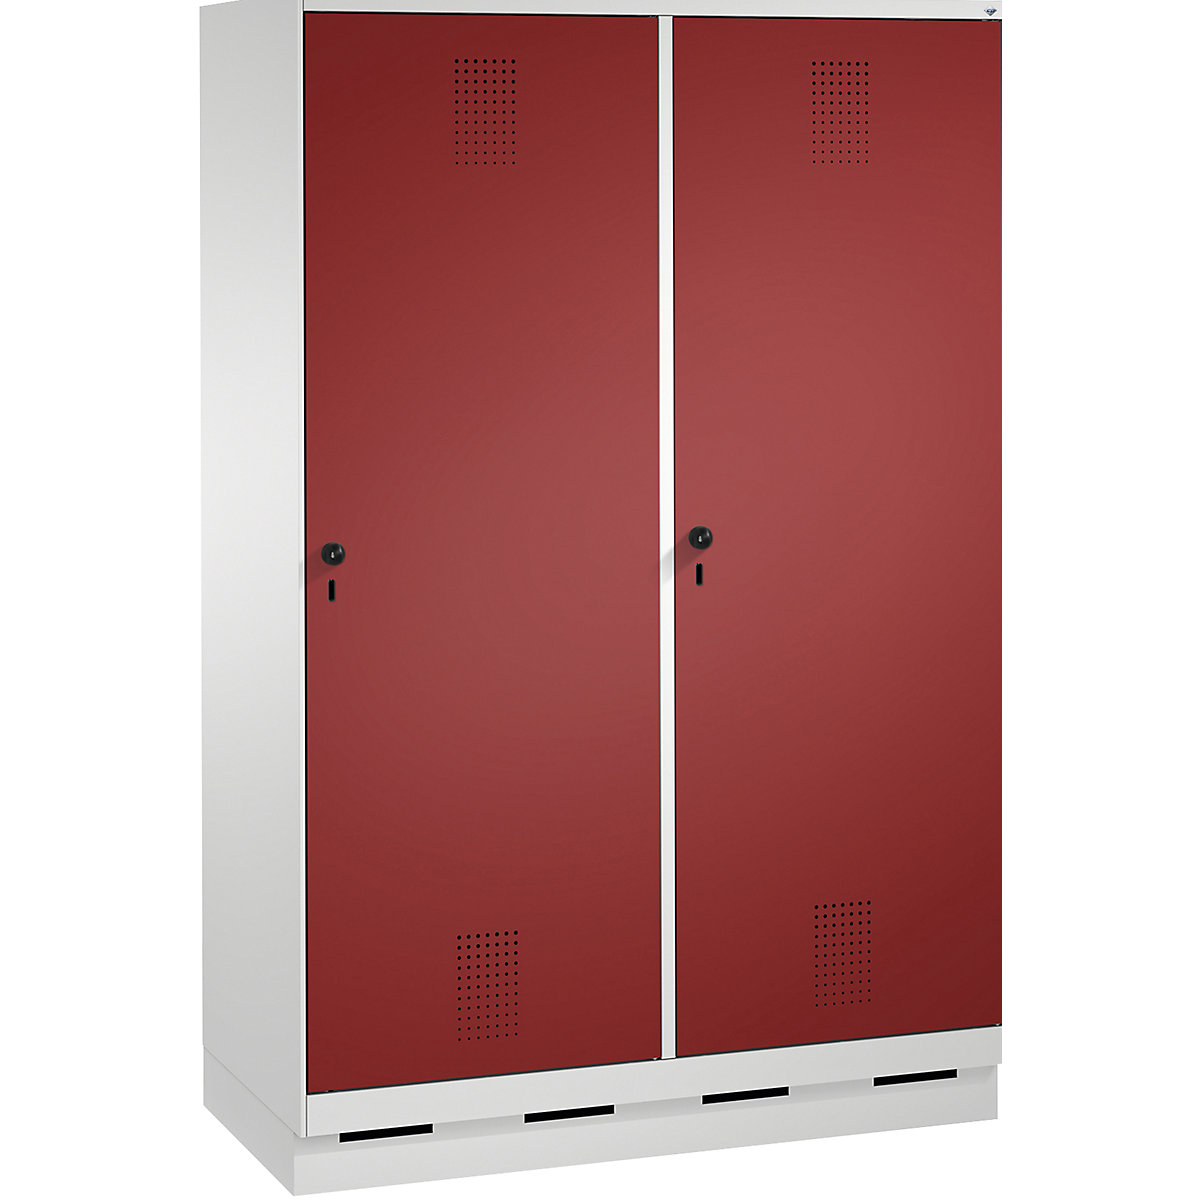 EVOLO Garderobenschrank, Tür über 2 Abteile, mit Sockel C+P, 4 Abteile, 2 Türen, Abteilbreite 300 mm, lichtgrau / rubinrot-3